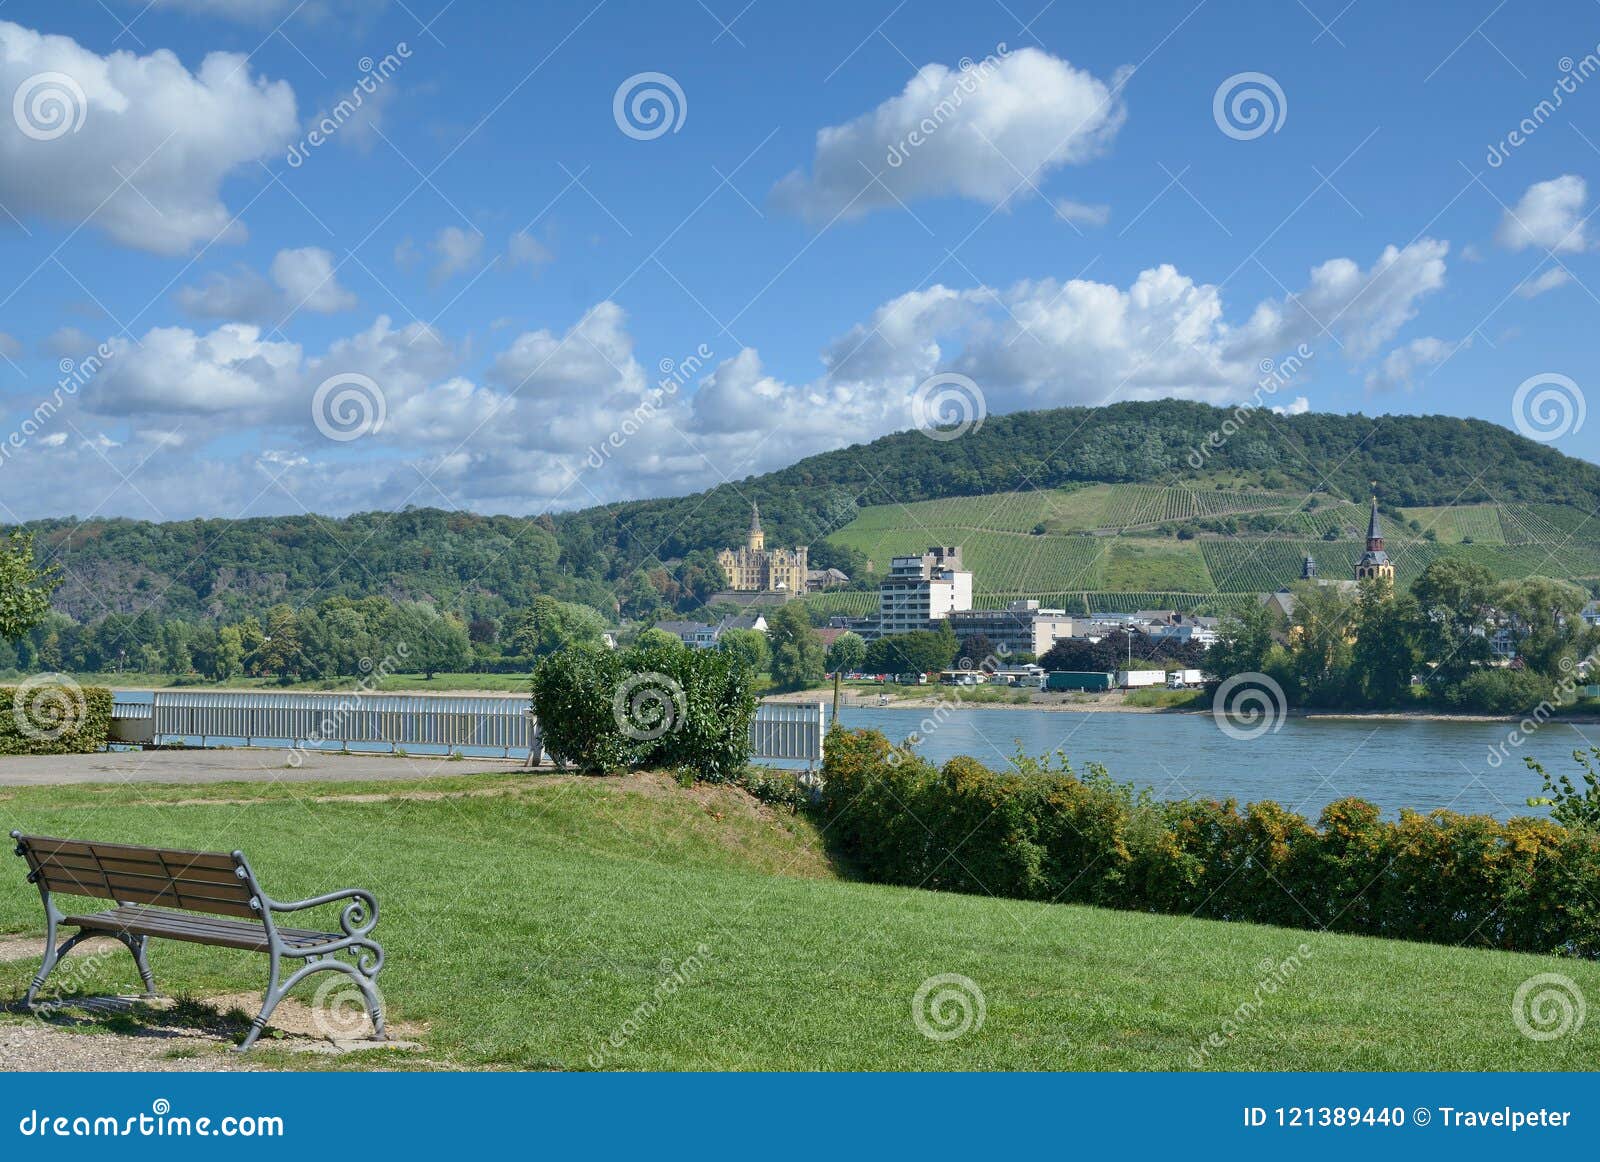 Bad Hoenningen Rhine River Rhineland Palatinate Germany Stock